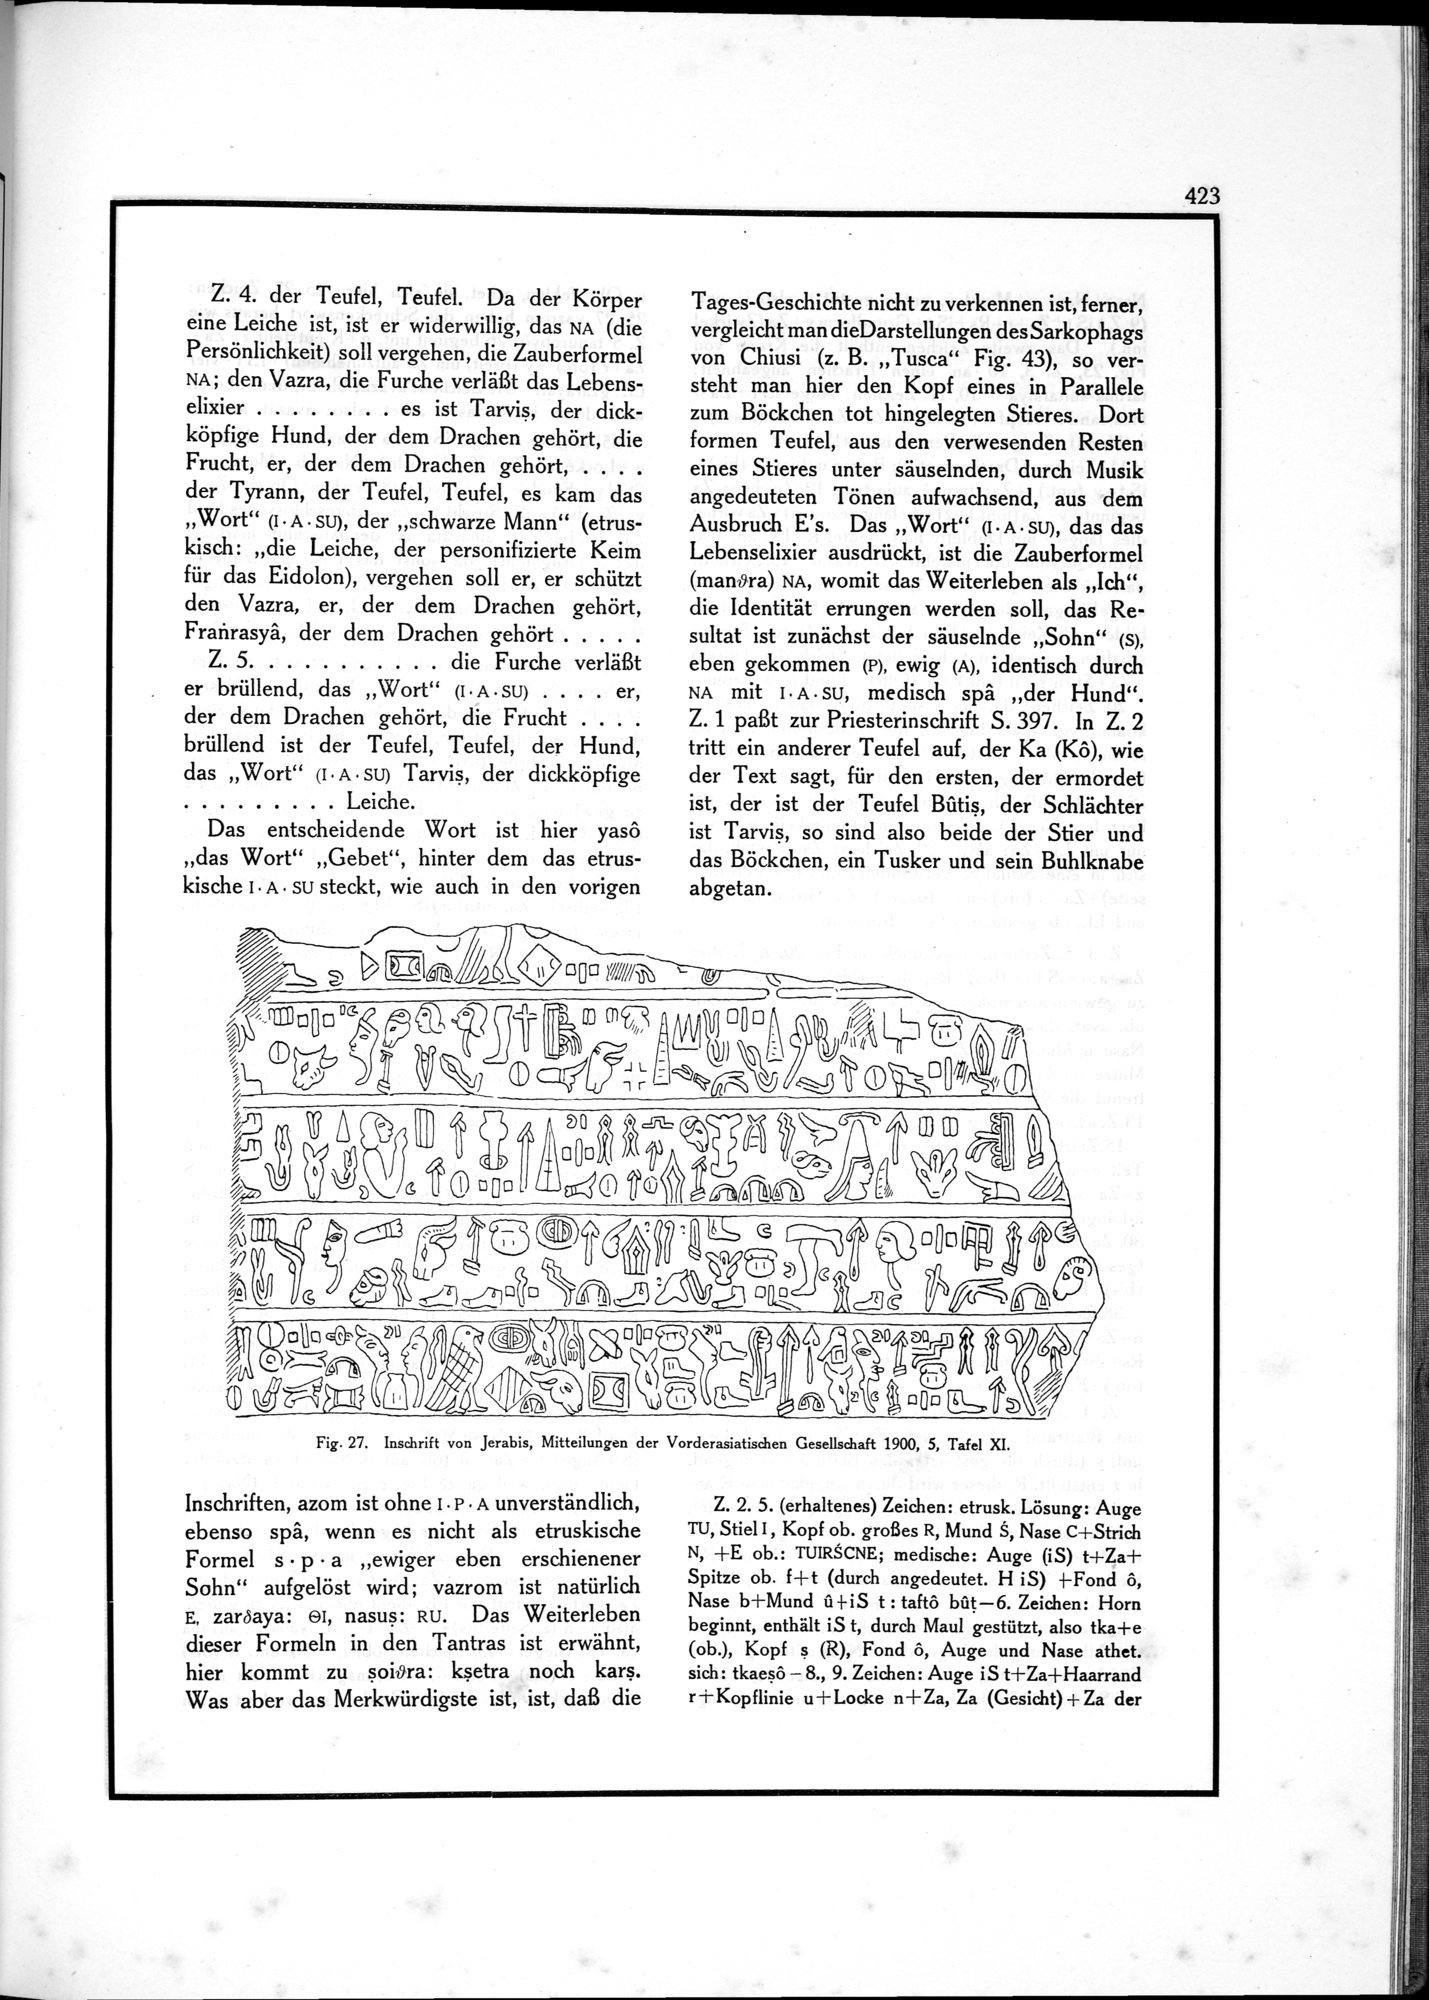 Die Teufel des Avesta und Ihre Beziehungen zur Ikonographie des Buddhismus Zentral-Asiens : vol.1 / Page 427 (Grayscale High Resolution Image)